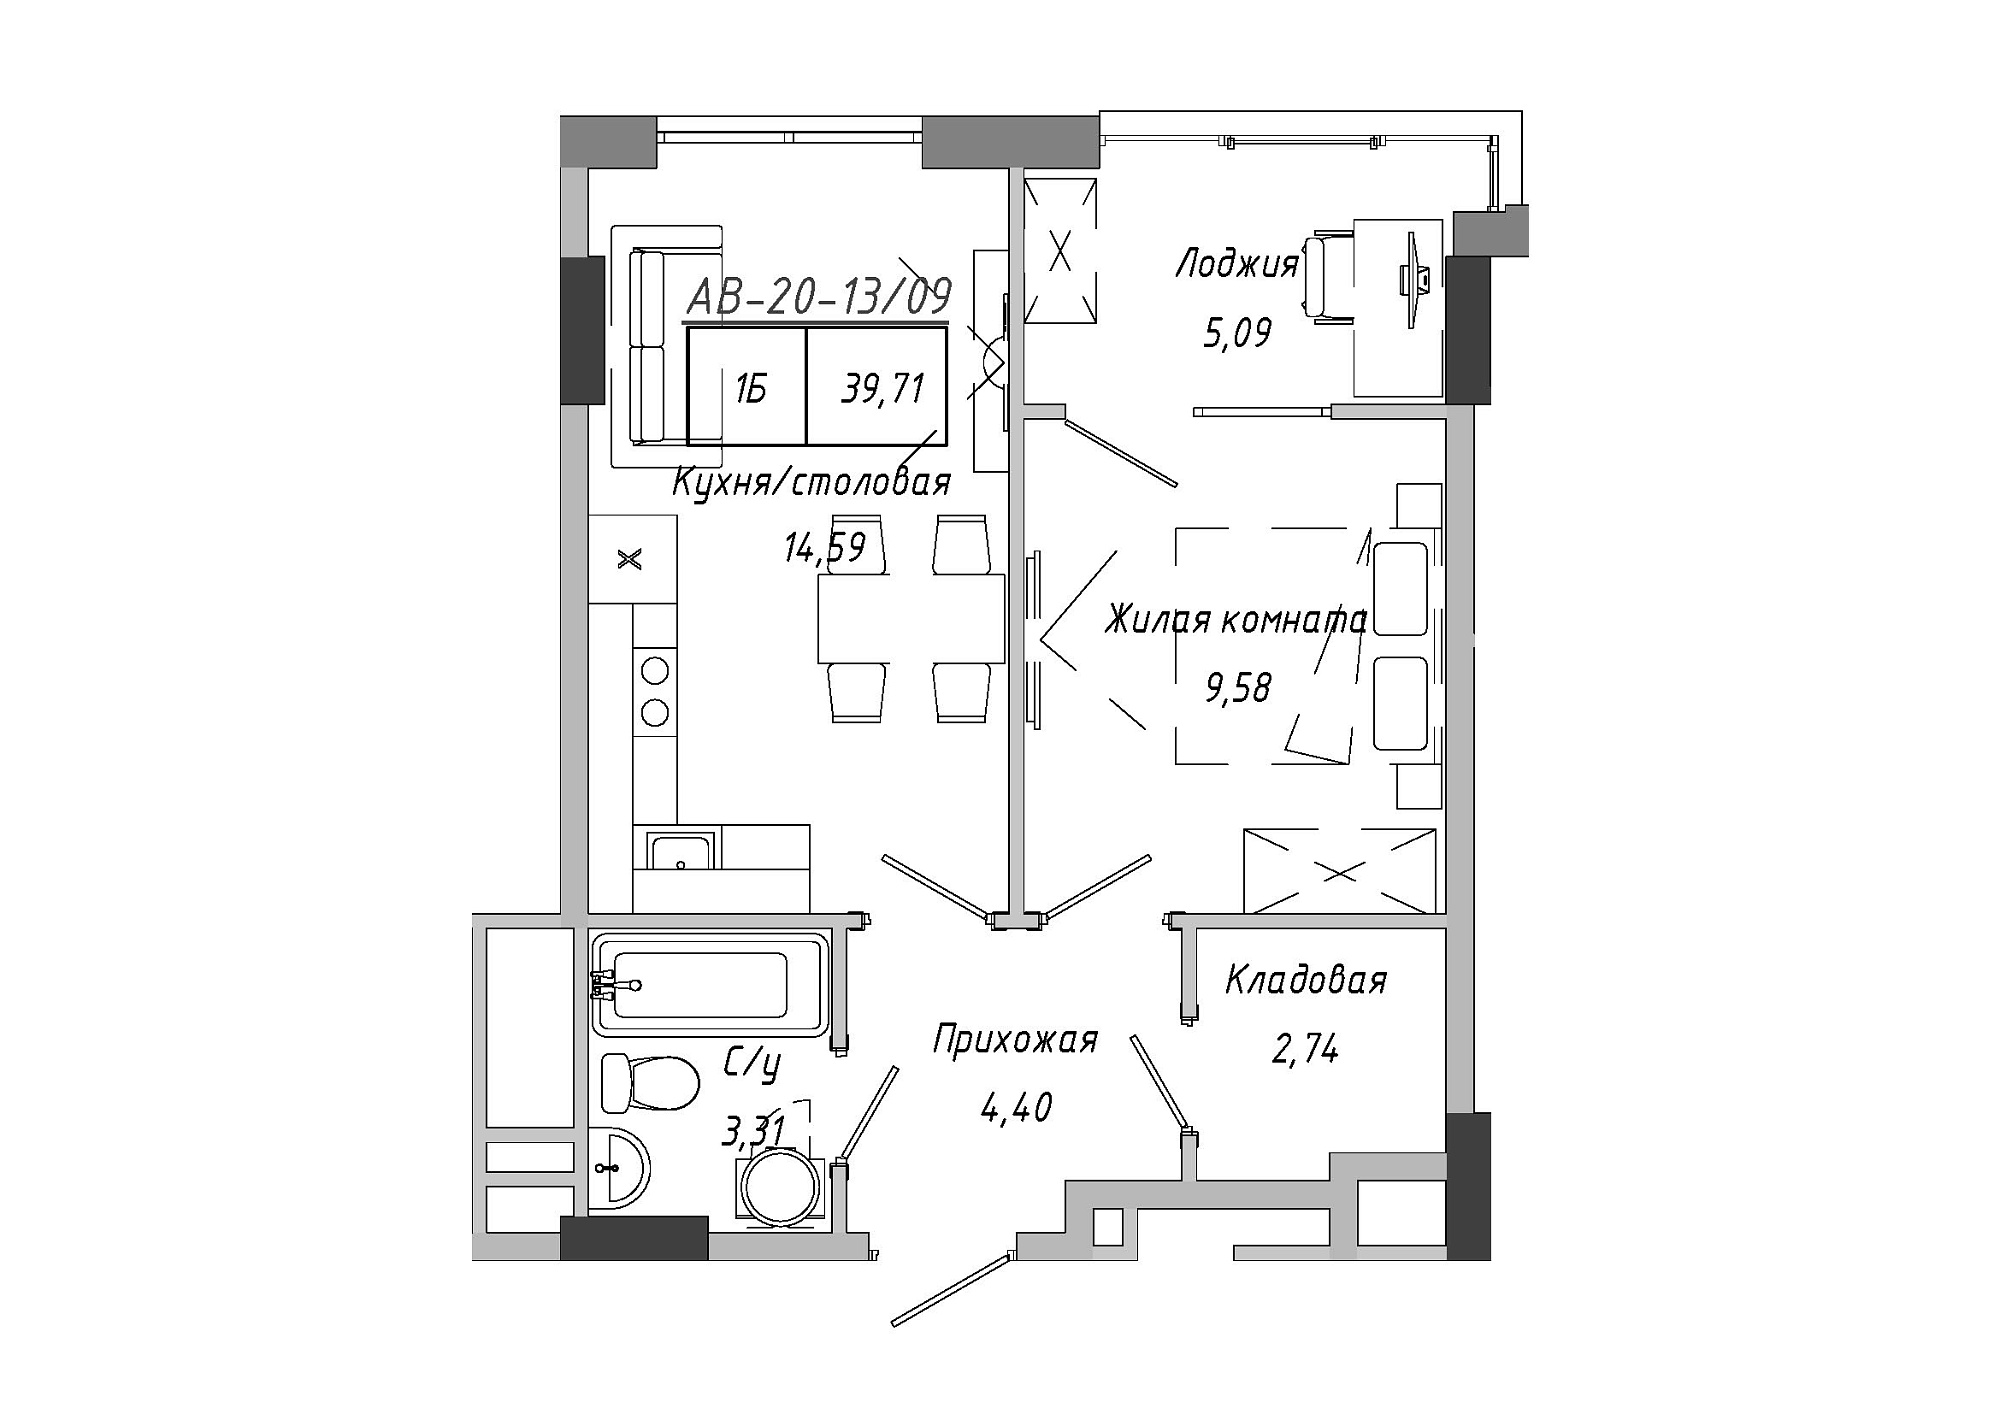 Планування 1-к квартира площею 39.71м2, AB-20-13/00109.